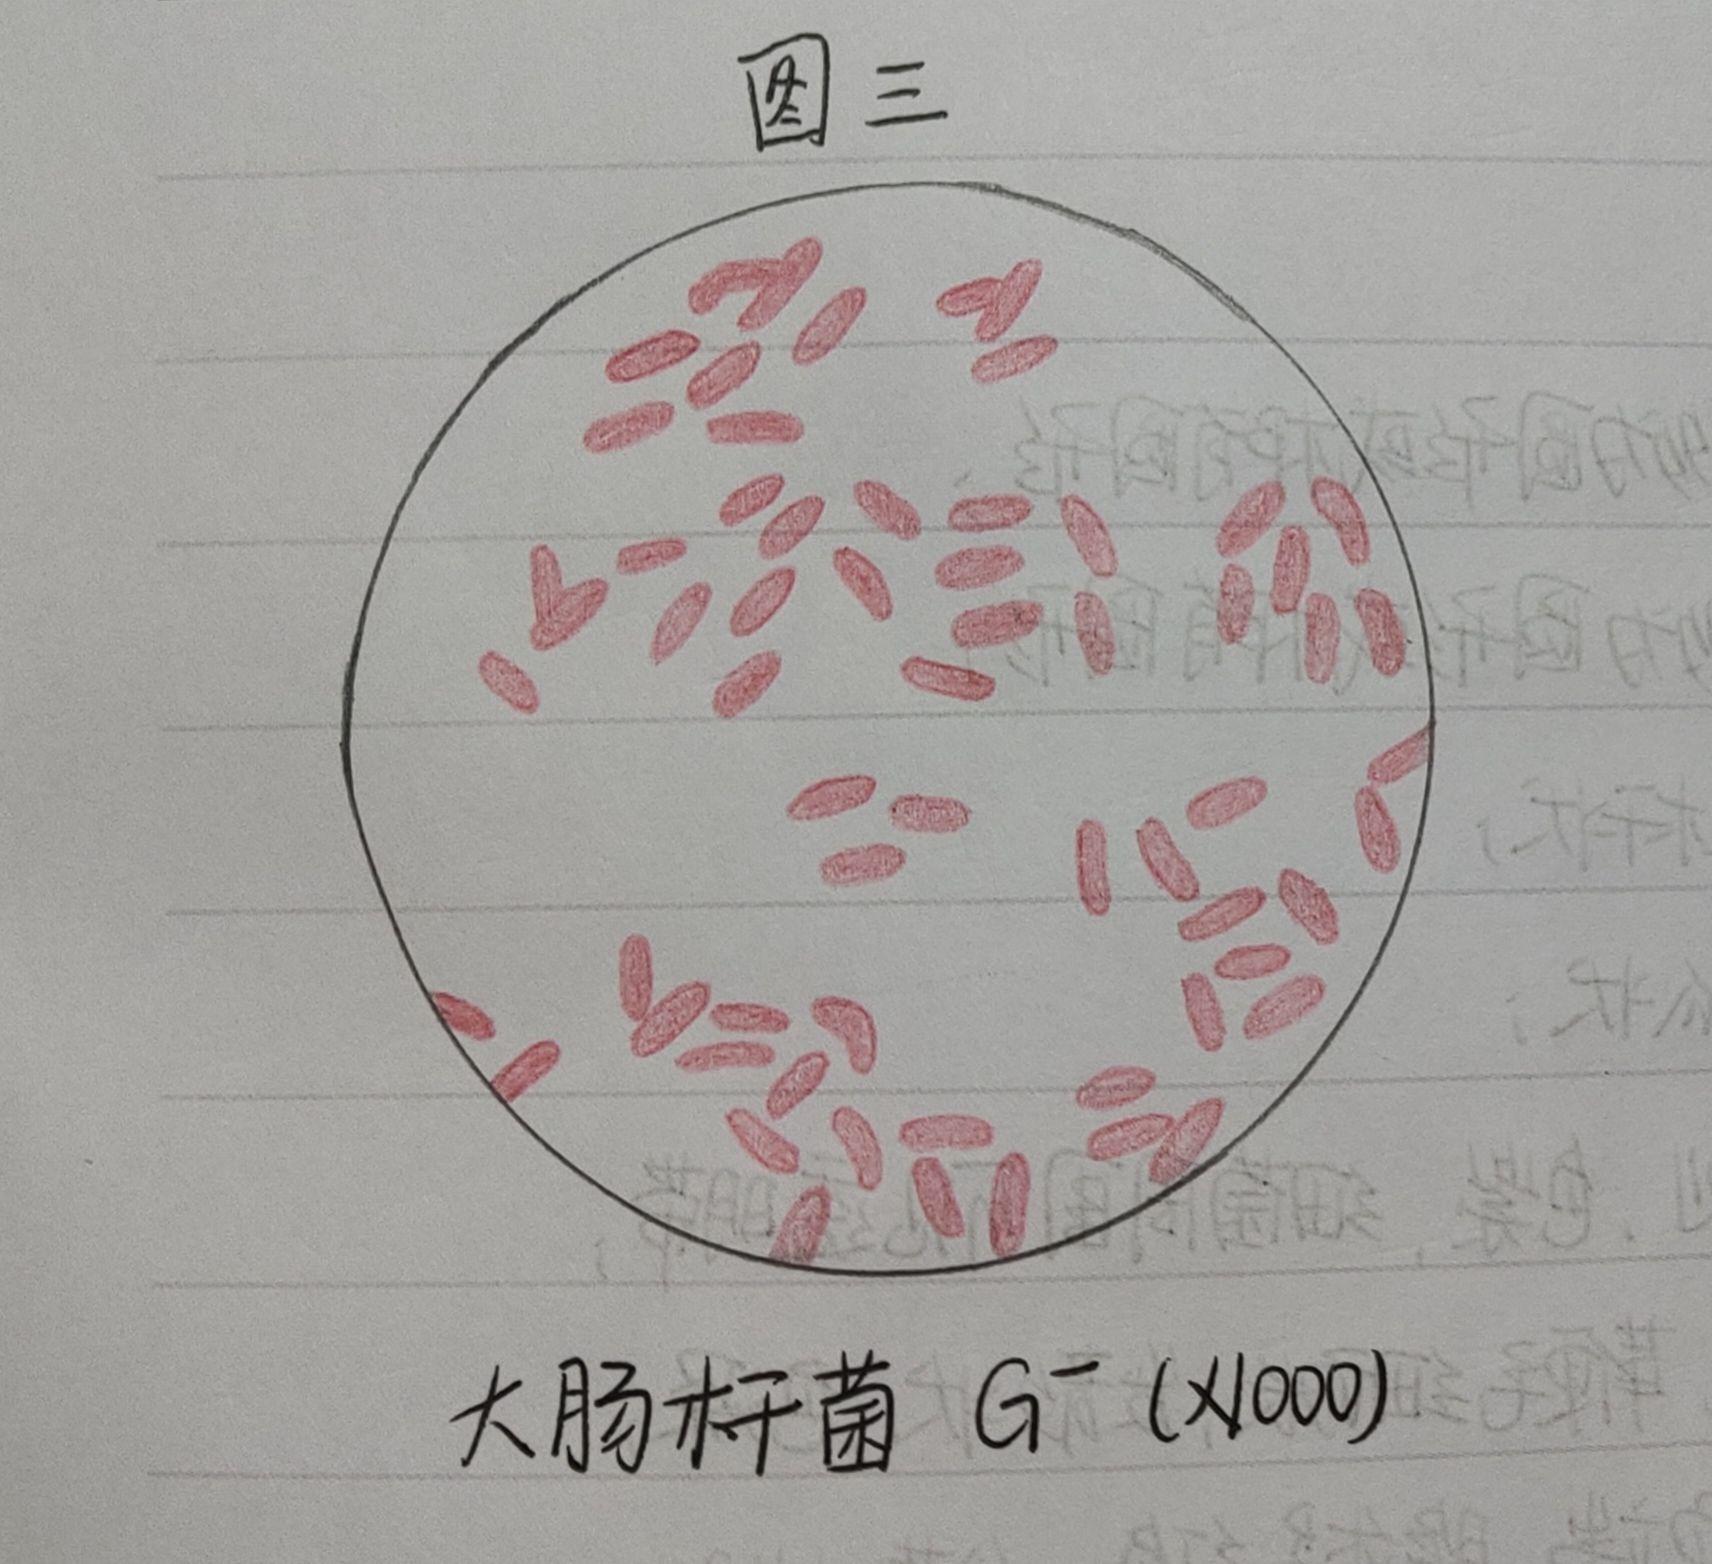 有葡萄球菌,结核杆菌,大肠杆菌,蜡样芽孢杆菌,炭疽杆菌的红蓝铅笔手绘